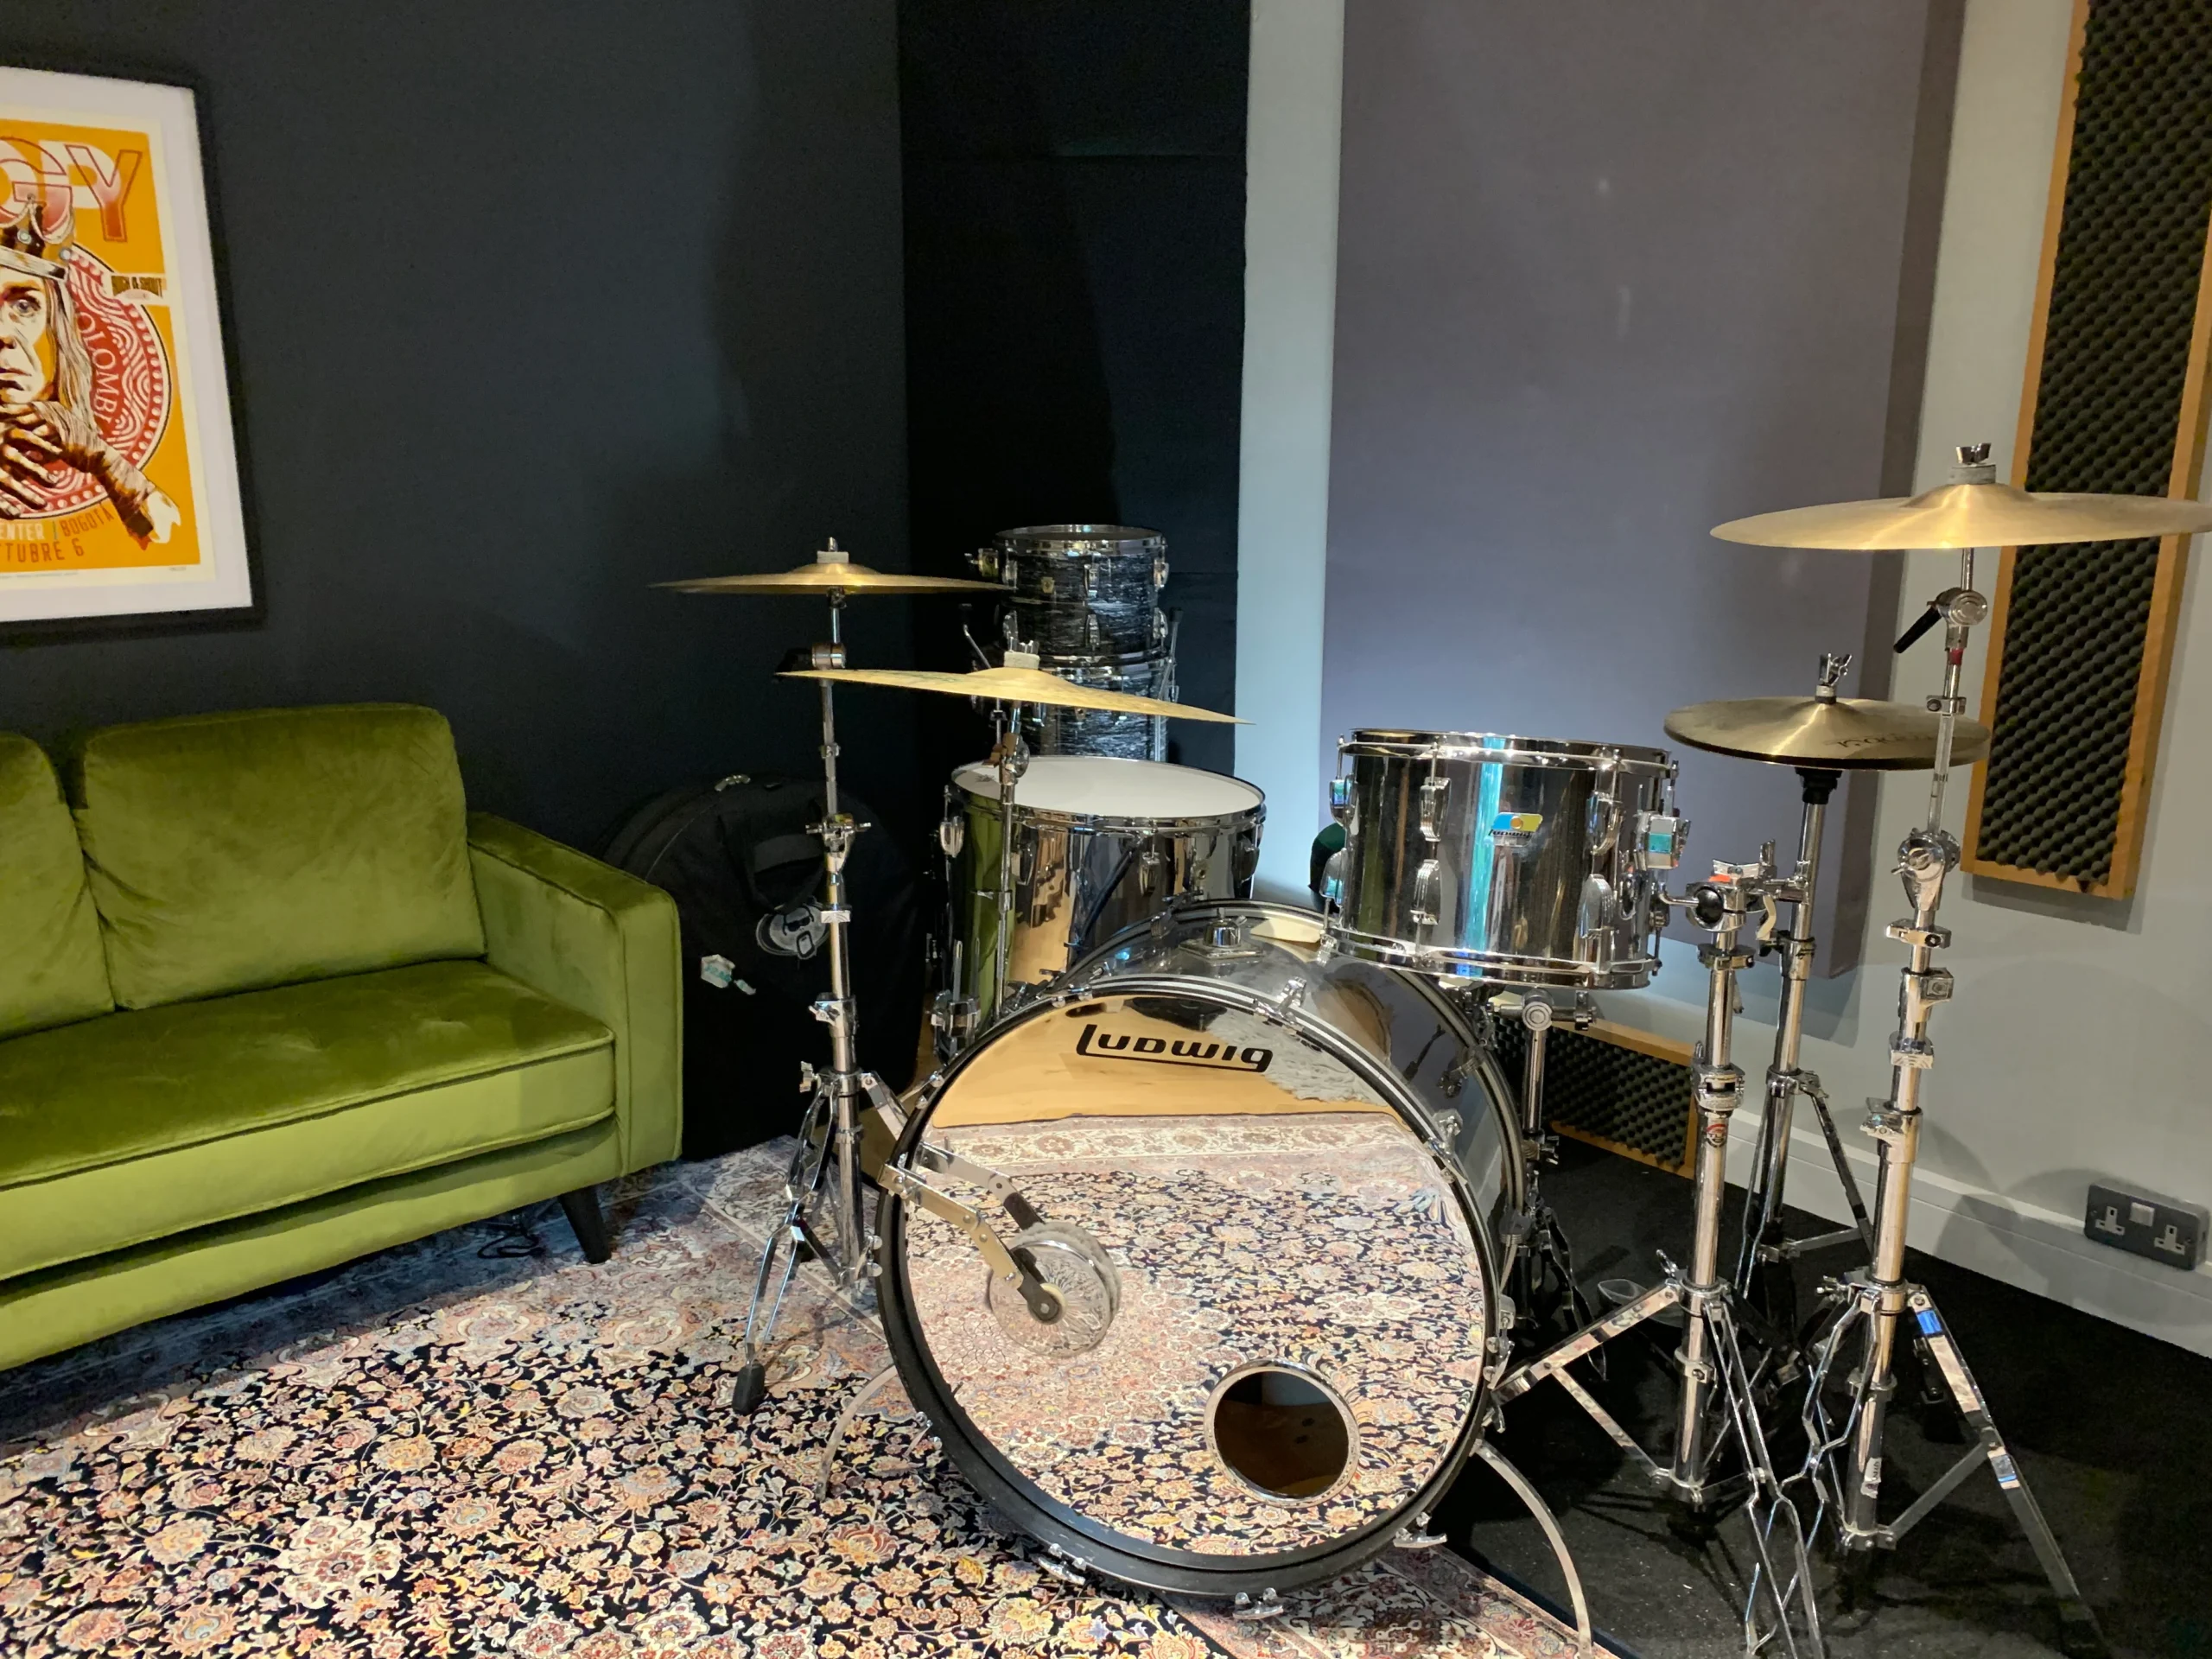 Drumkit in soundproof drum room